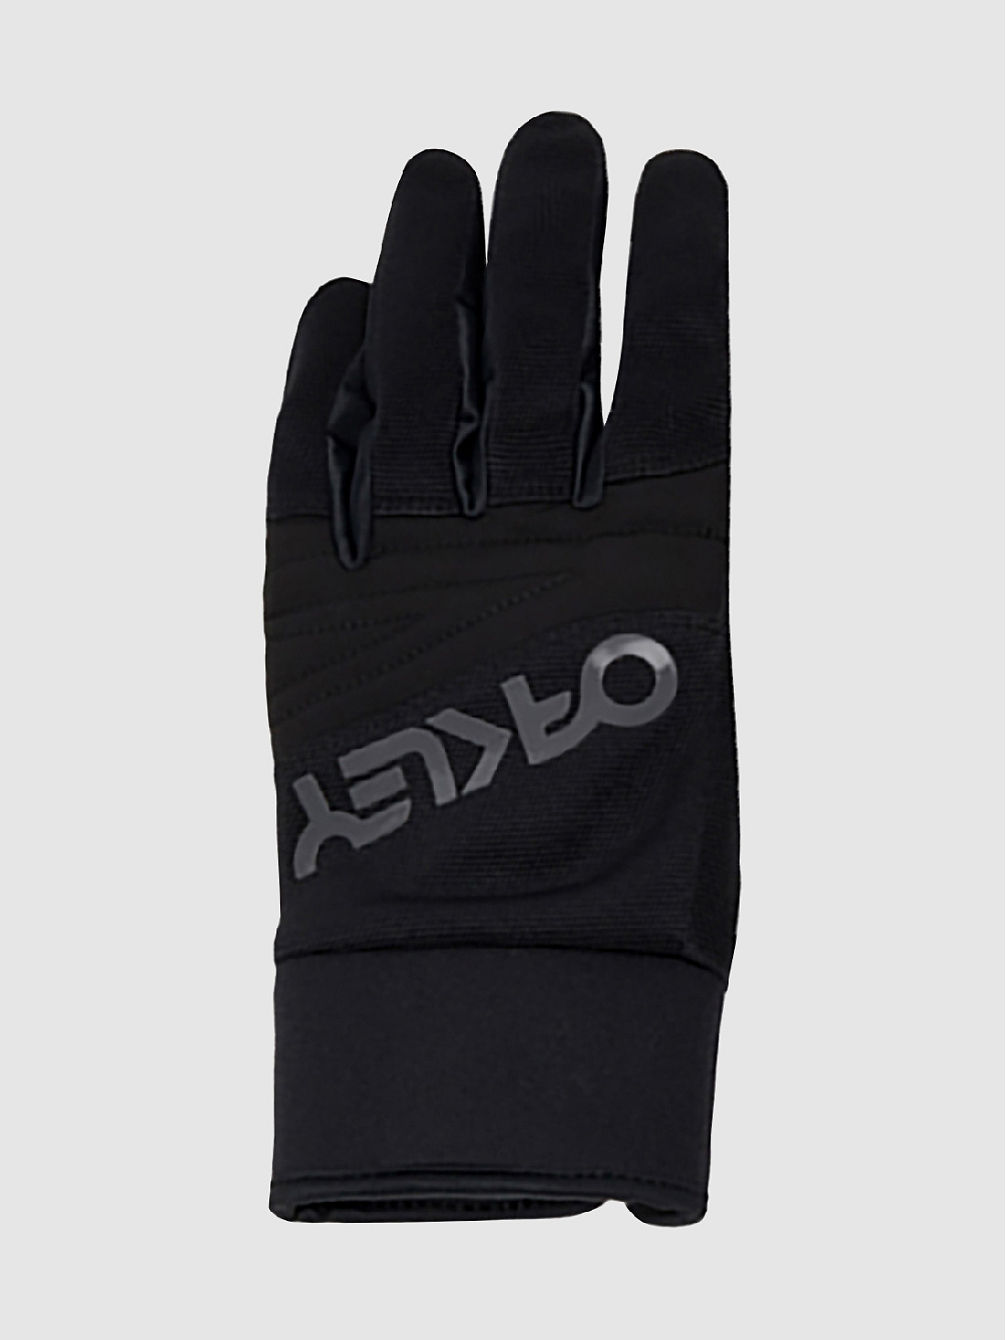 Factory Pilot Core Handschuhe